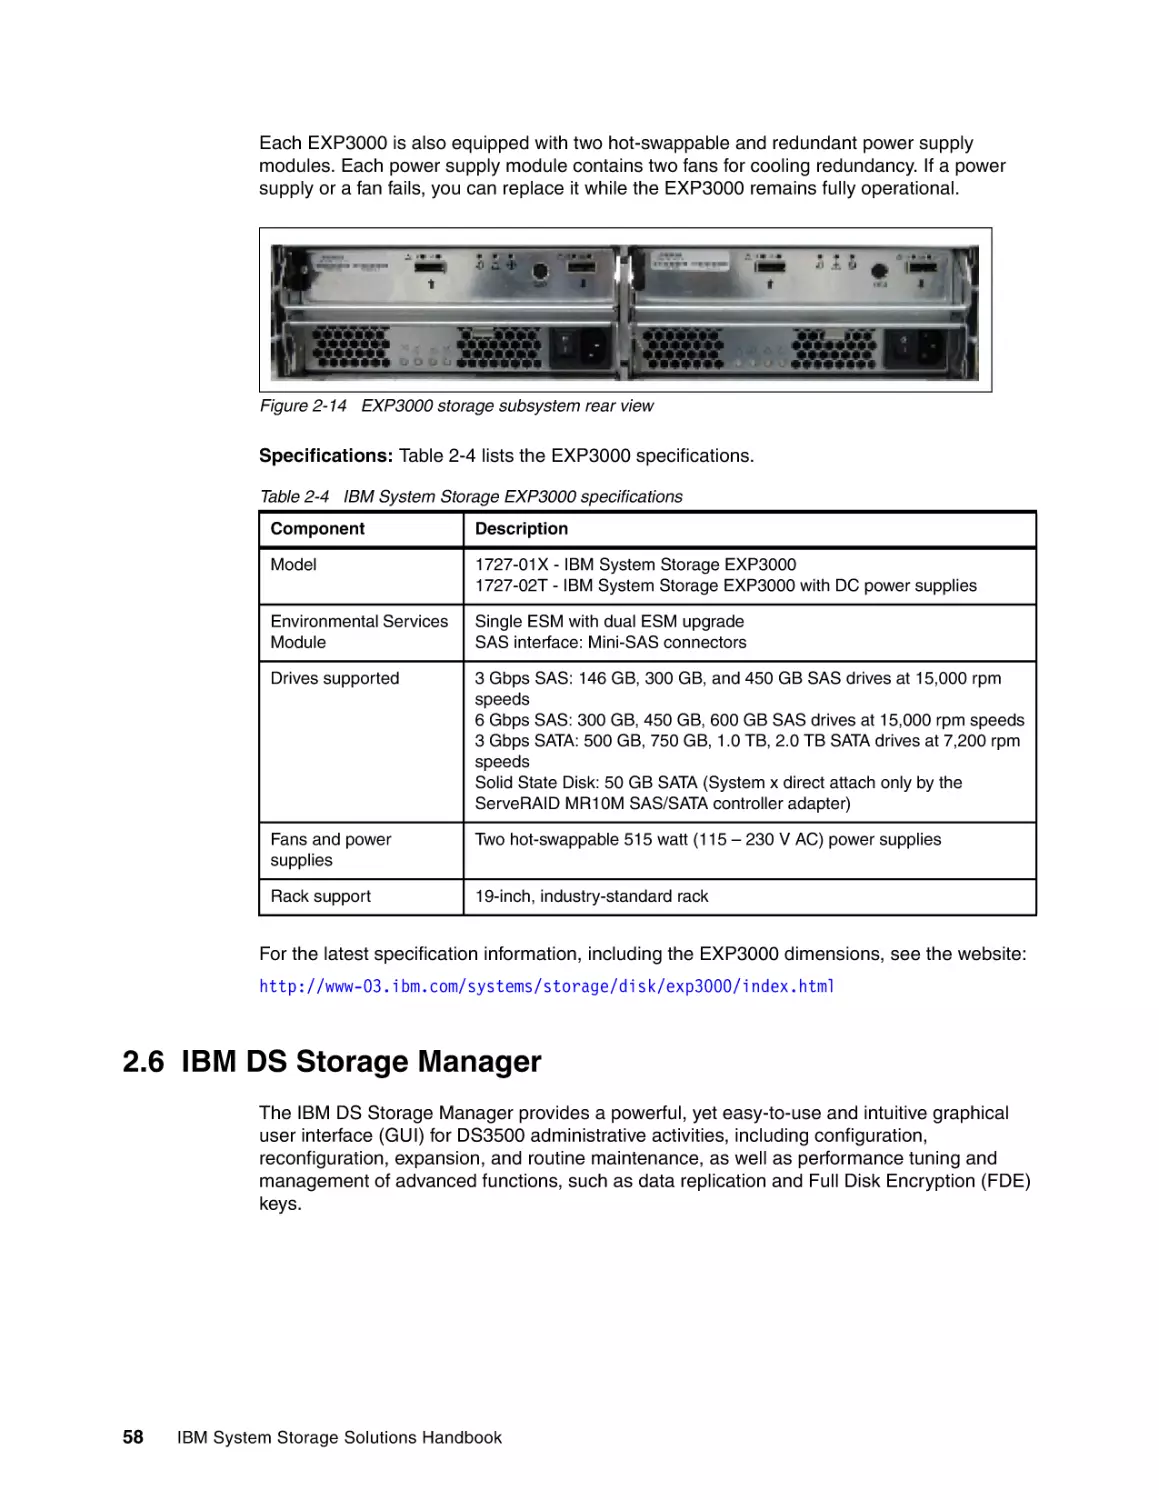 2.6 IBM DS Storage Manager